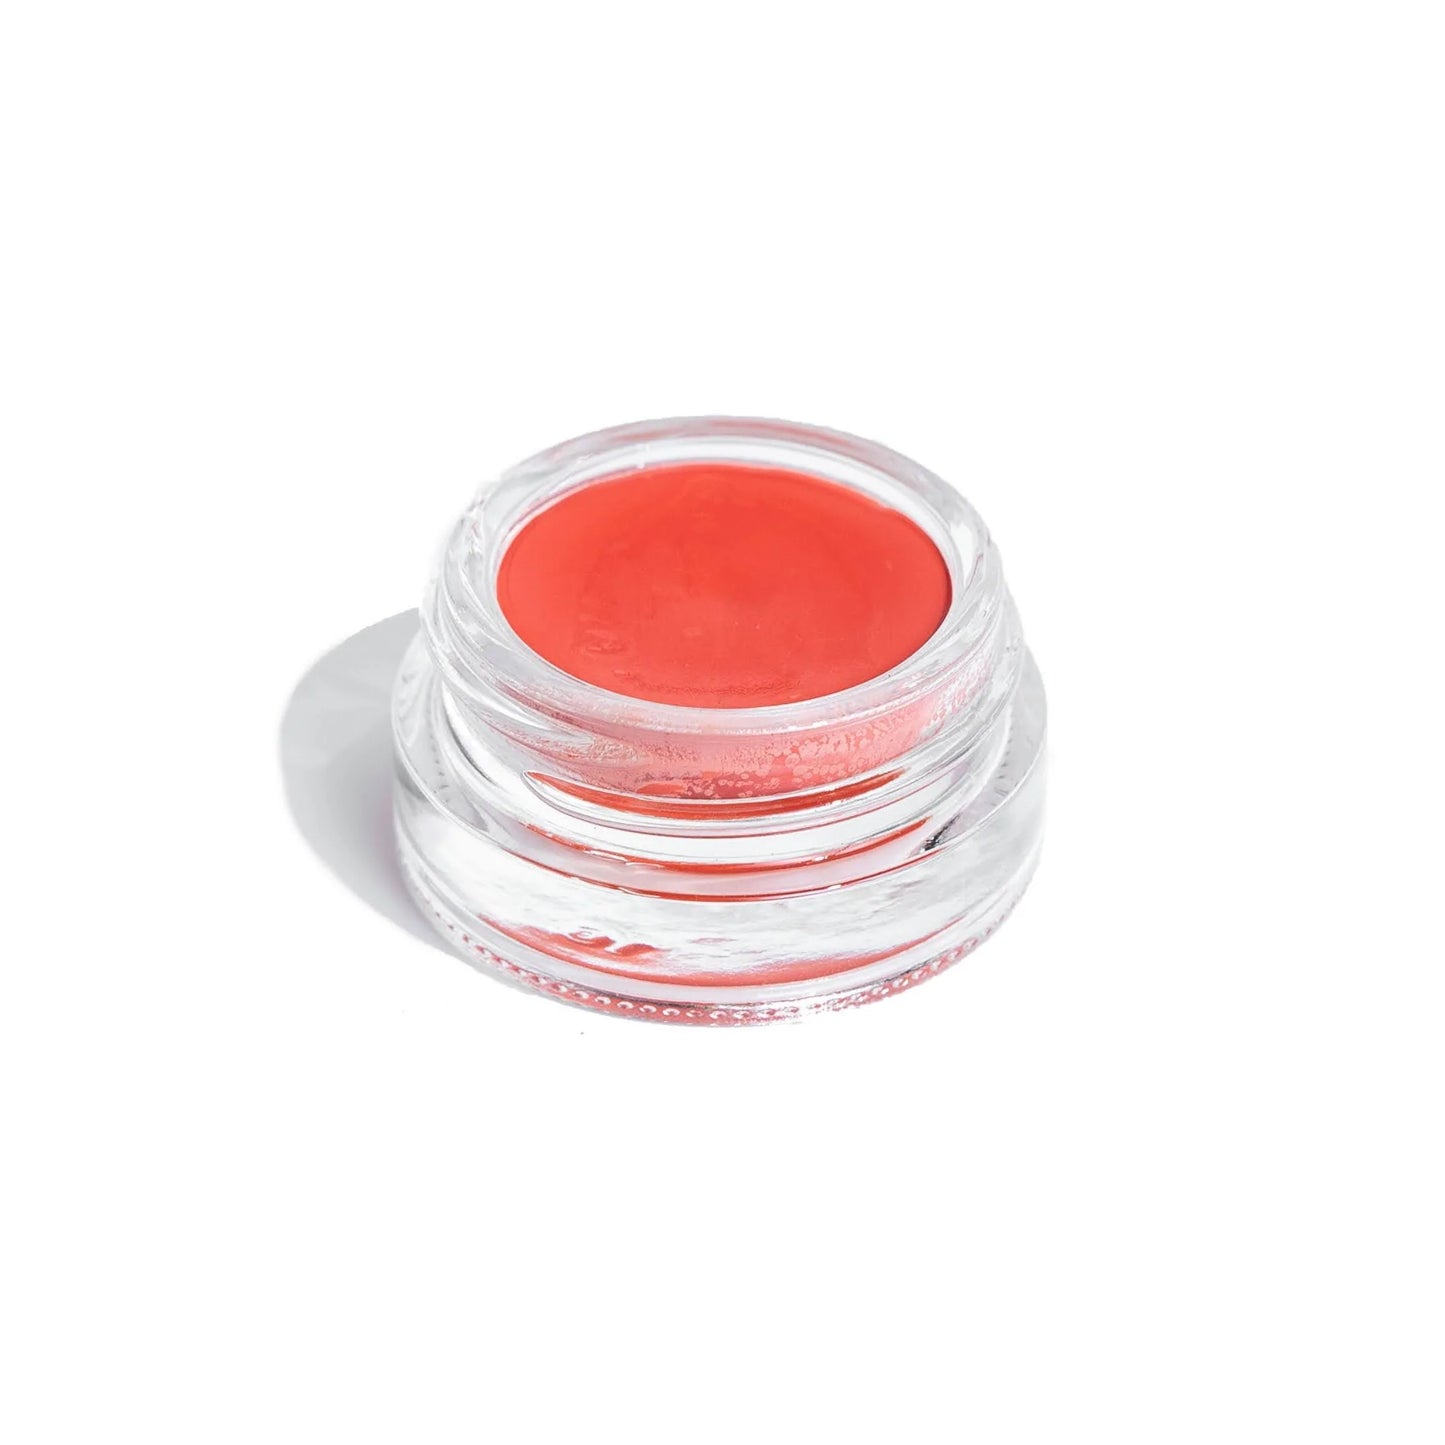 Peachy Coral Lip & Cheek Tint